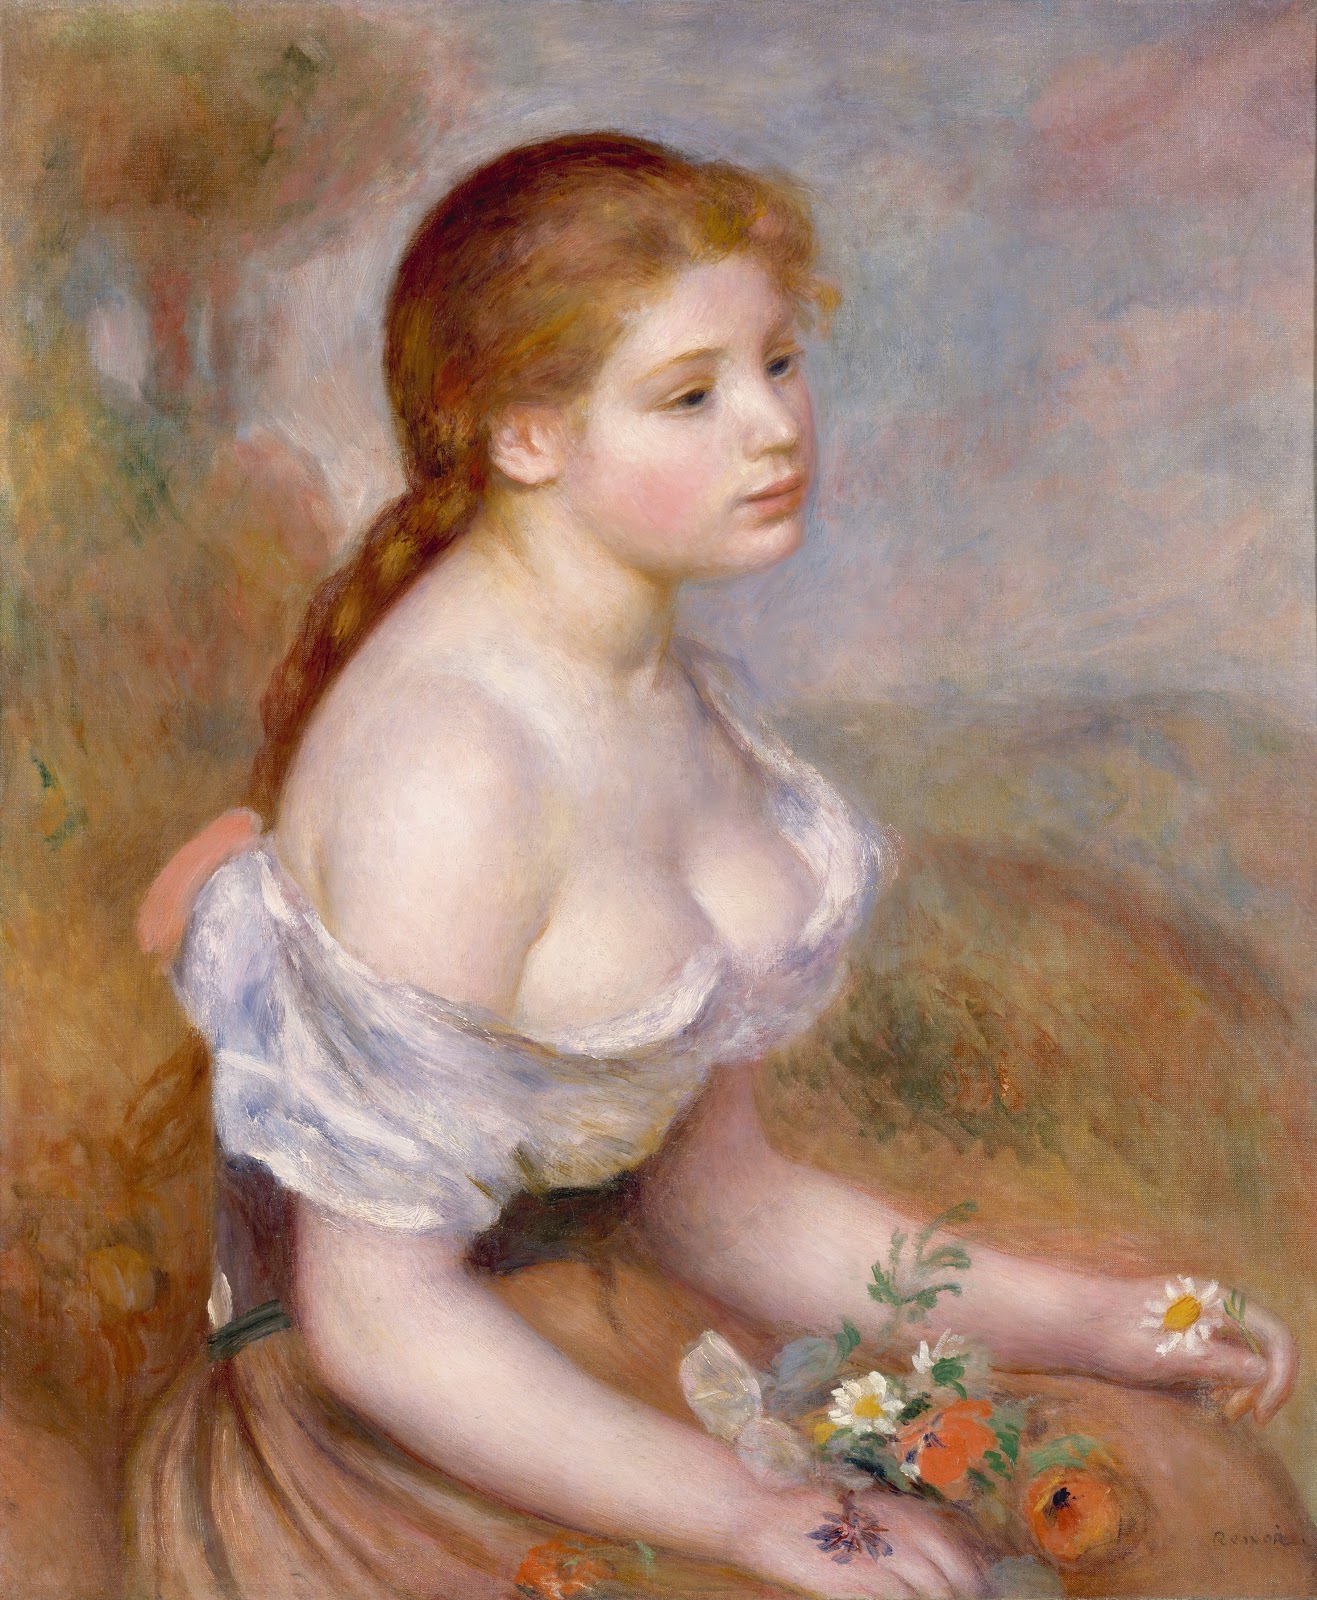 Pierre+Auguste+Renoir-1841-1-19 (796).jpg